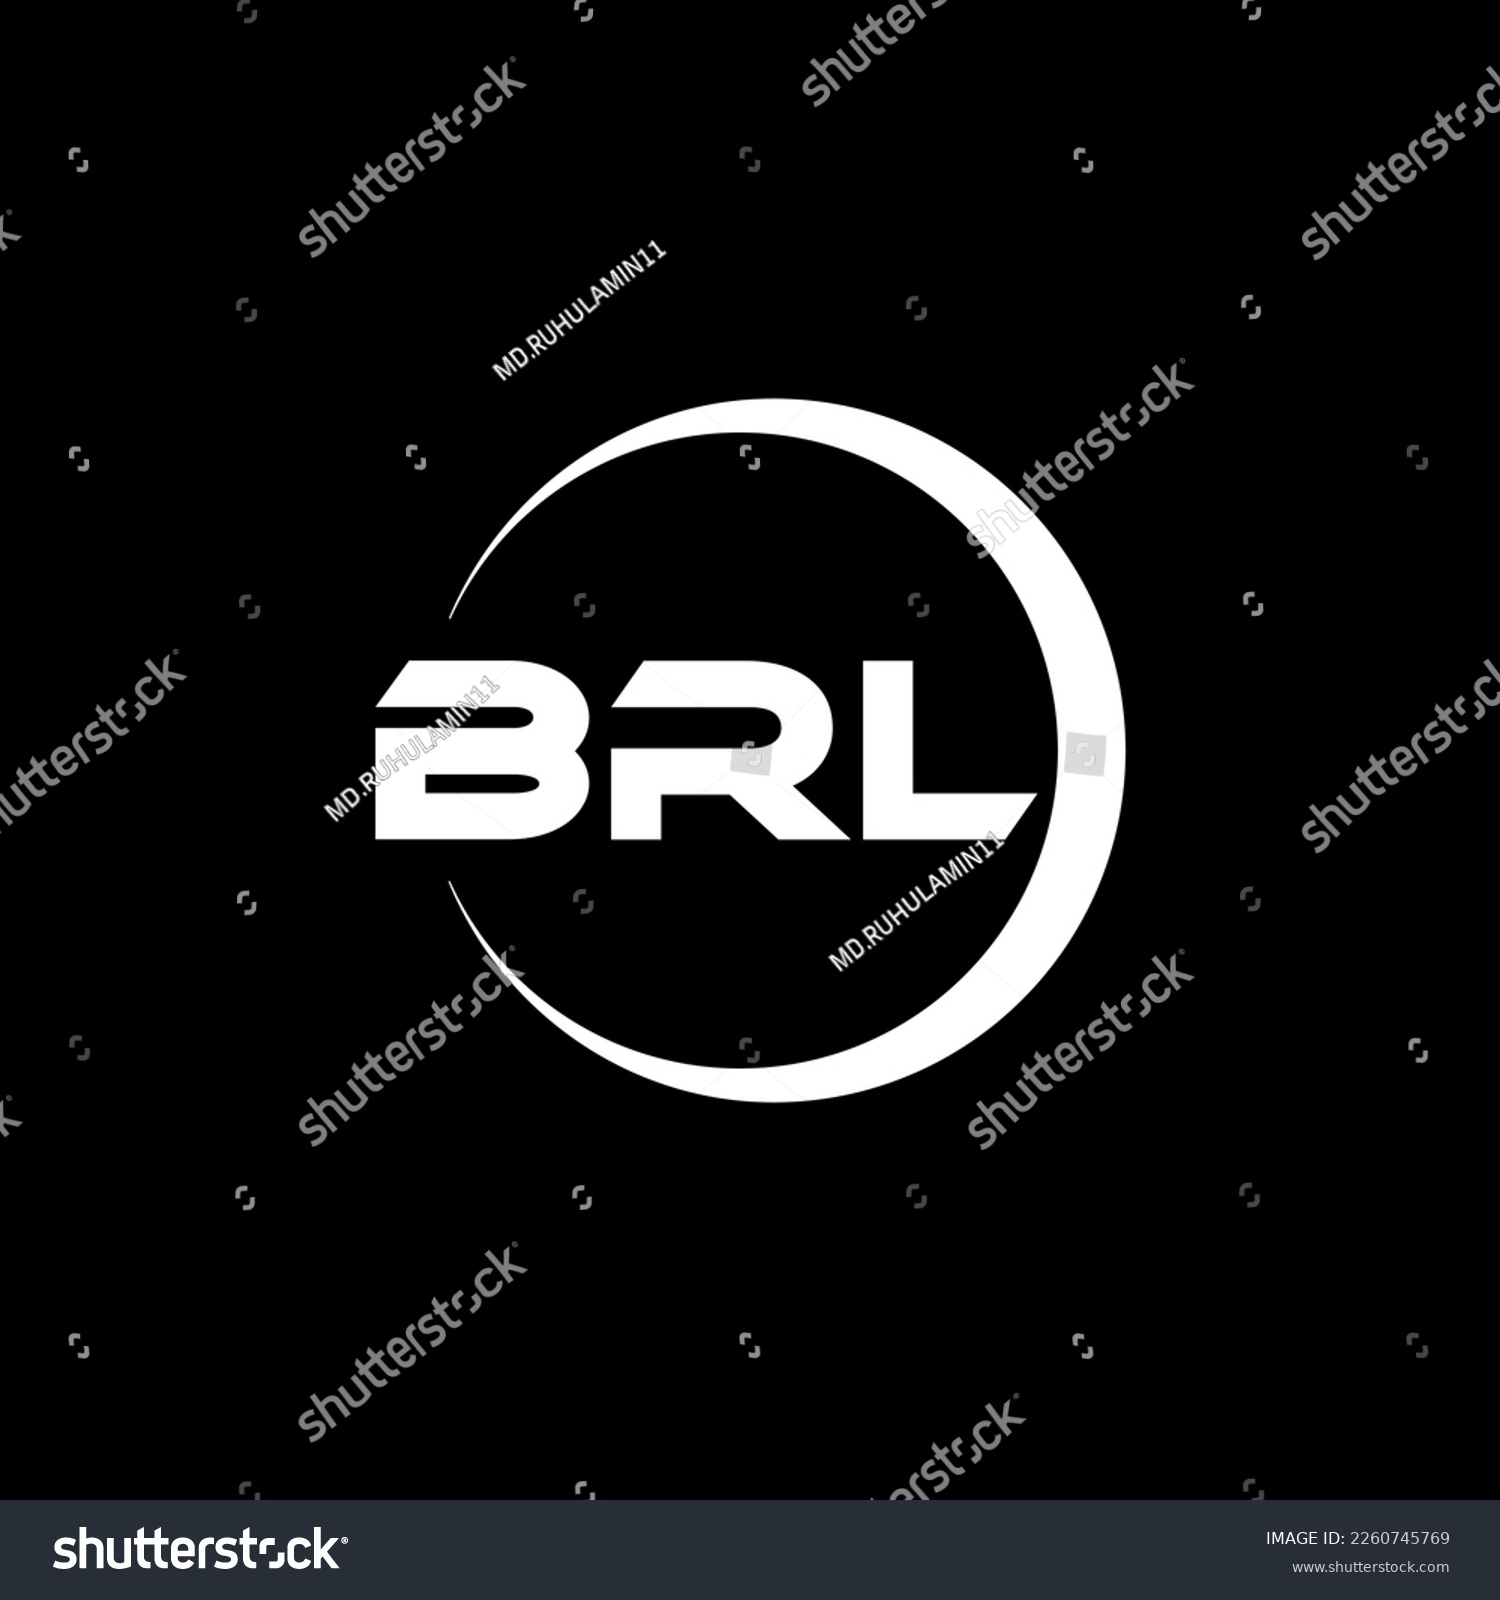 SVG of BRL letter logo design in illustration. Vector logo, calligraphy designs for logo, Poster, Invitation, etc. svg